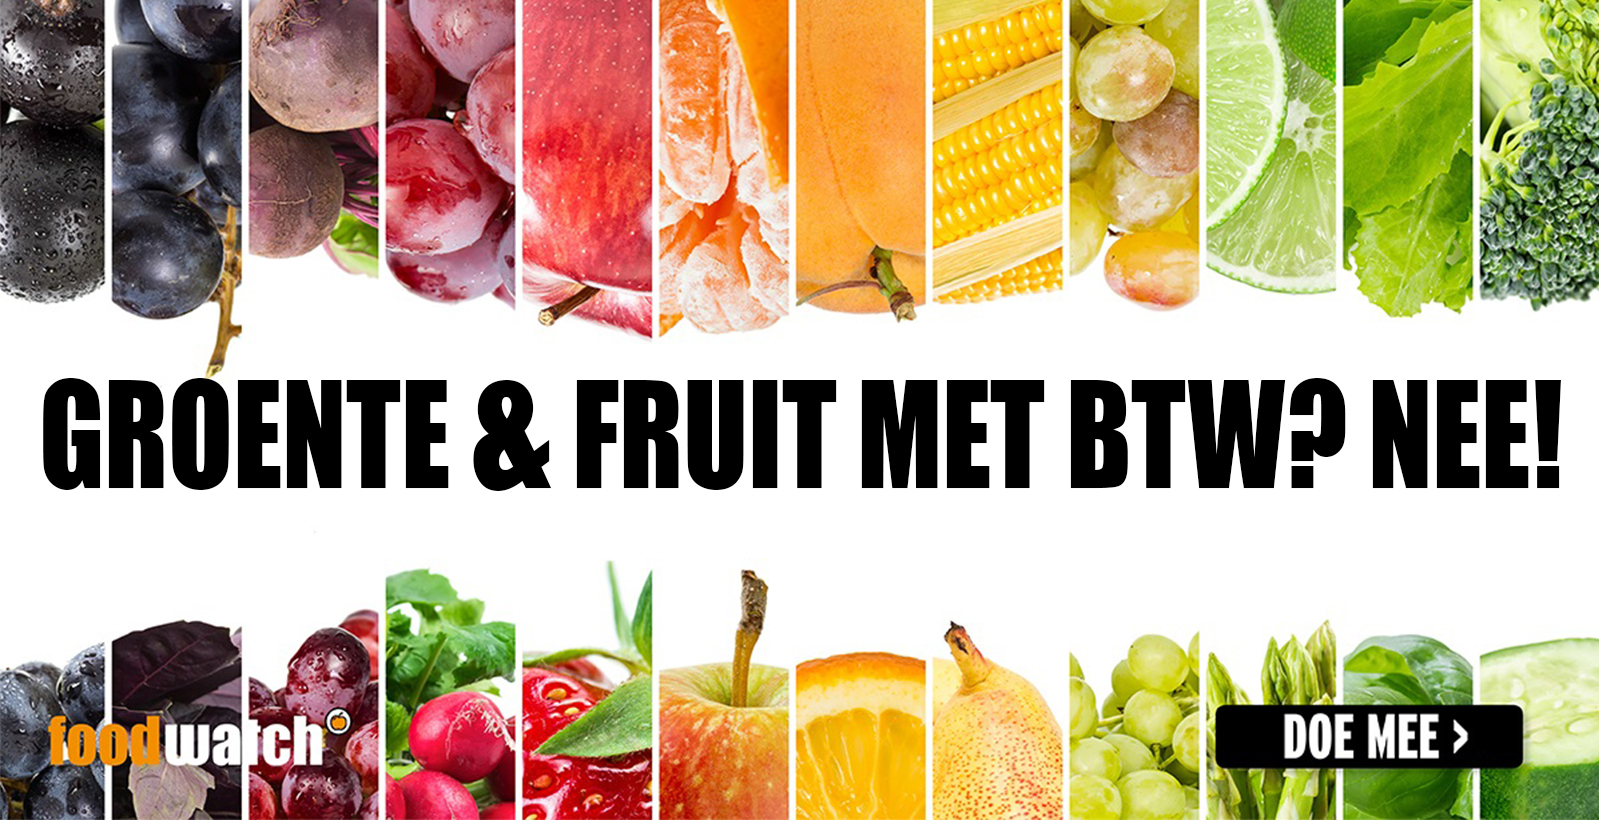 Niet genoeg Uit Basistheorie Maak groente en fruit btw-vrij!: Foodwatch NL